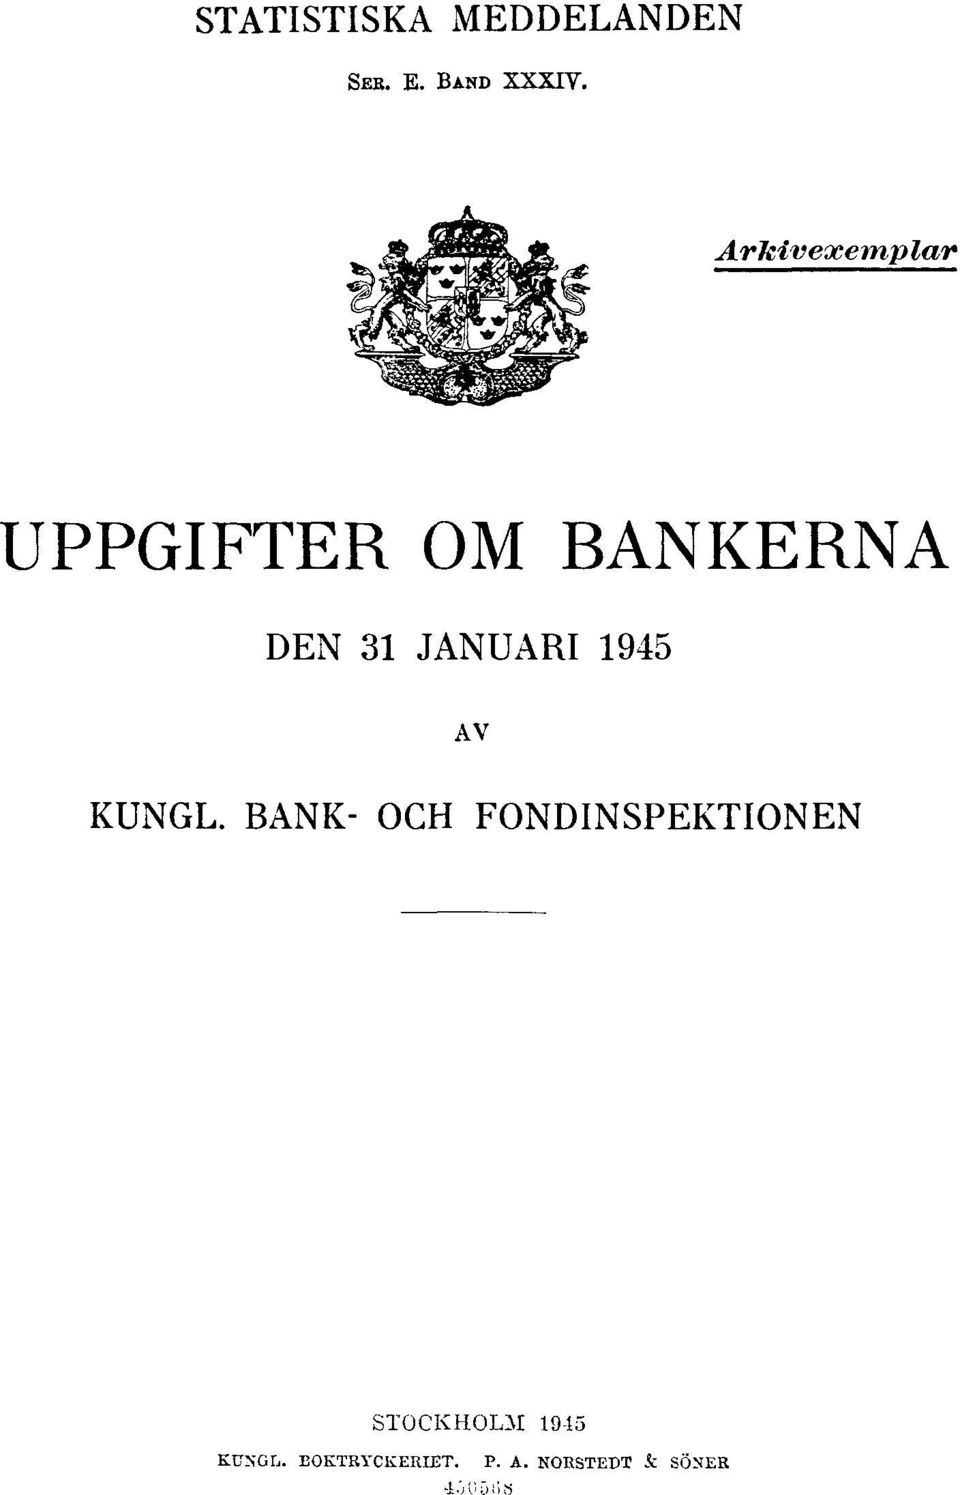 1945 AV KUNGL. BANK- OCH FONDINSPEKTIONEN KUNGL.